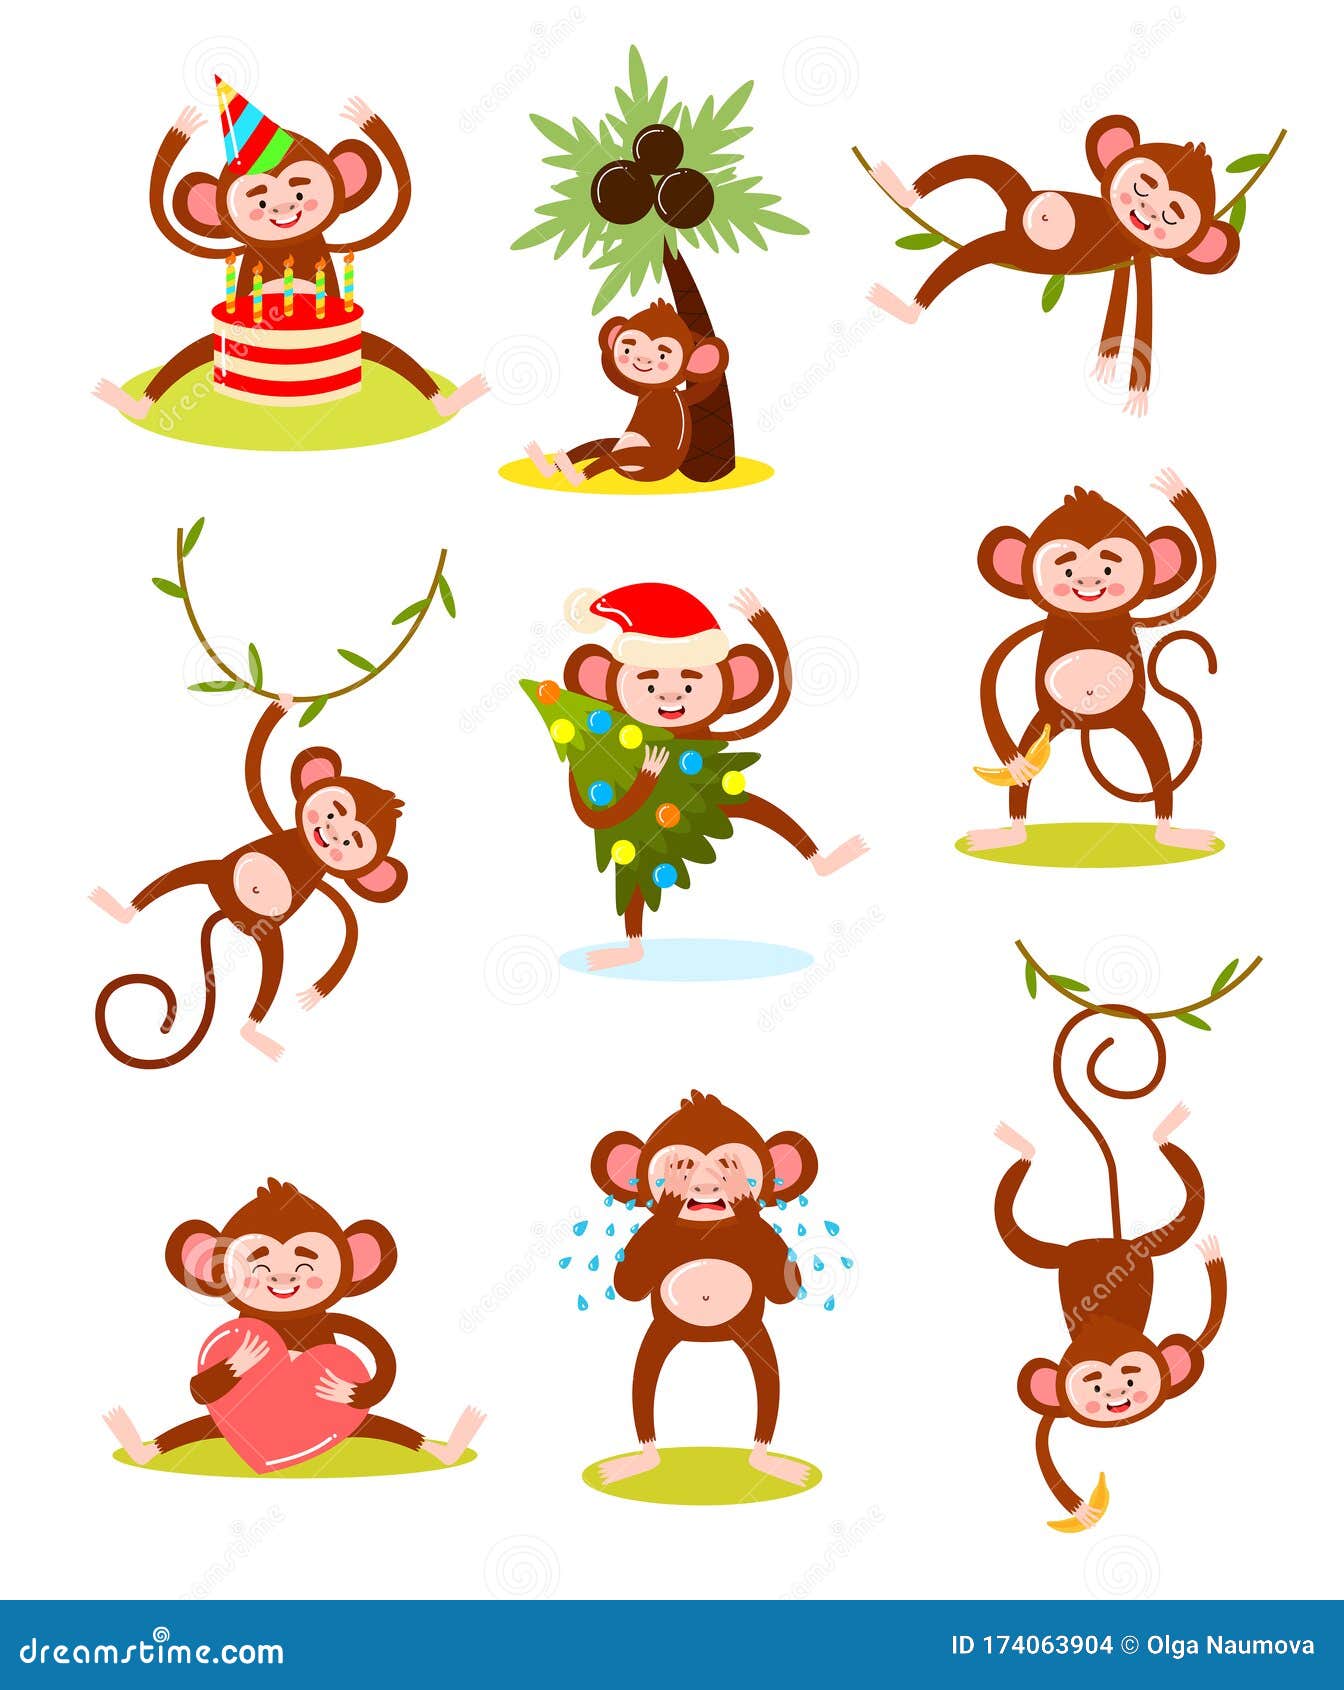 Ilustração em vetor macaco bebê fofo. personagem de desenho